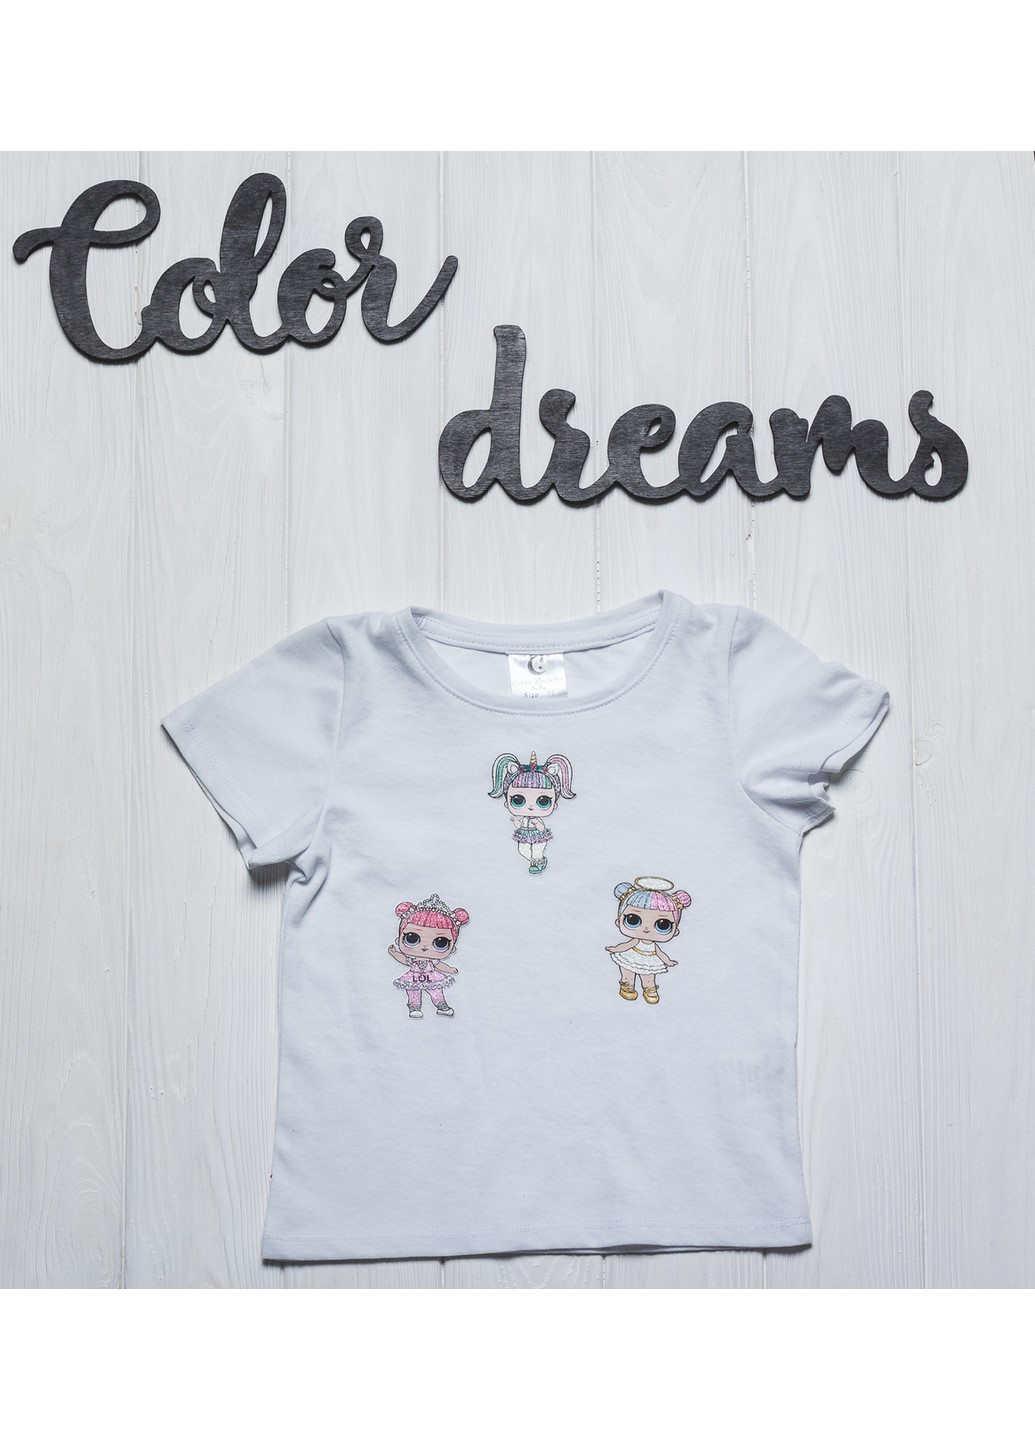 Белая демисезонная футболка 1045 98 белая Color Dreams